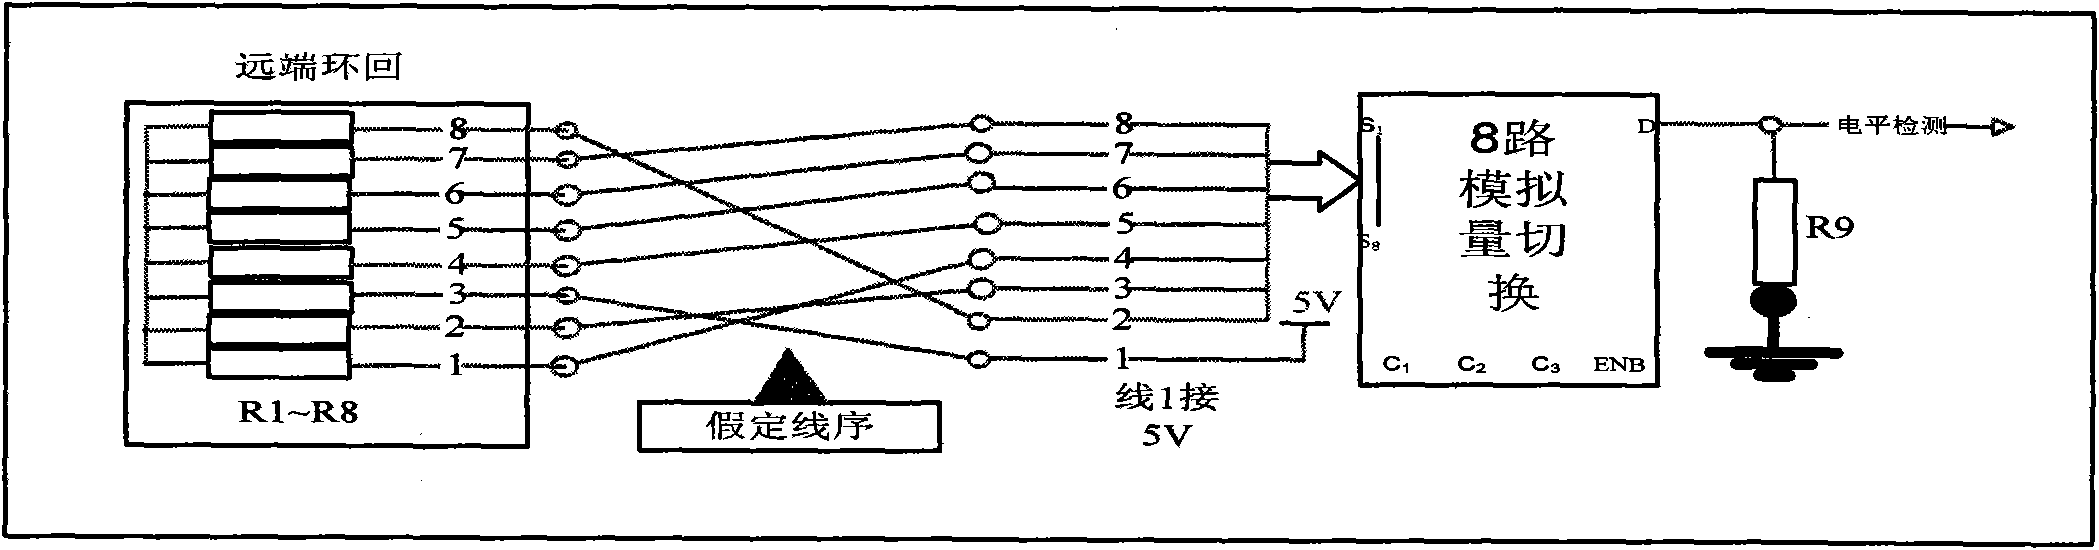 Wire order test method